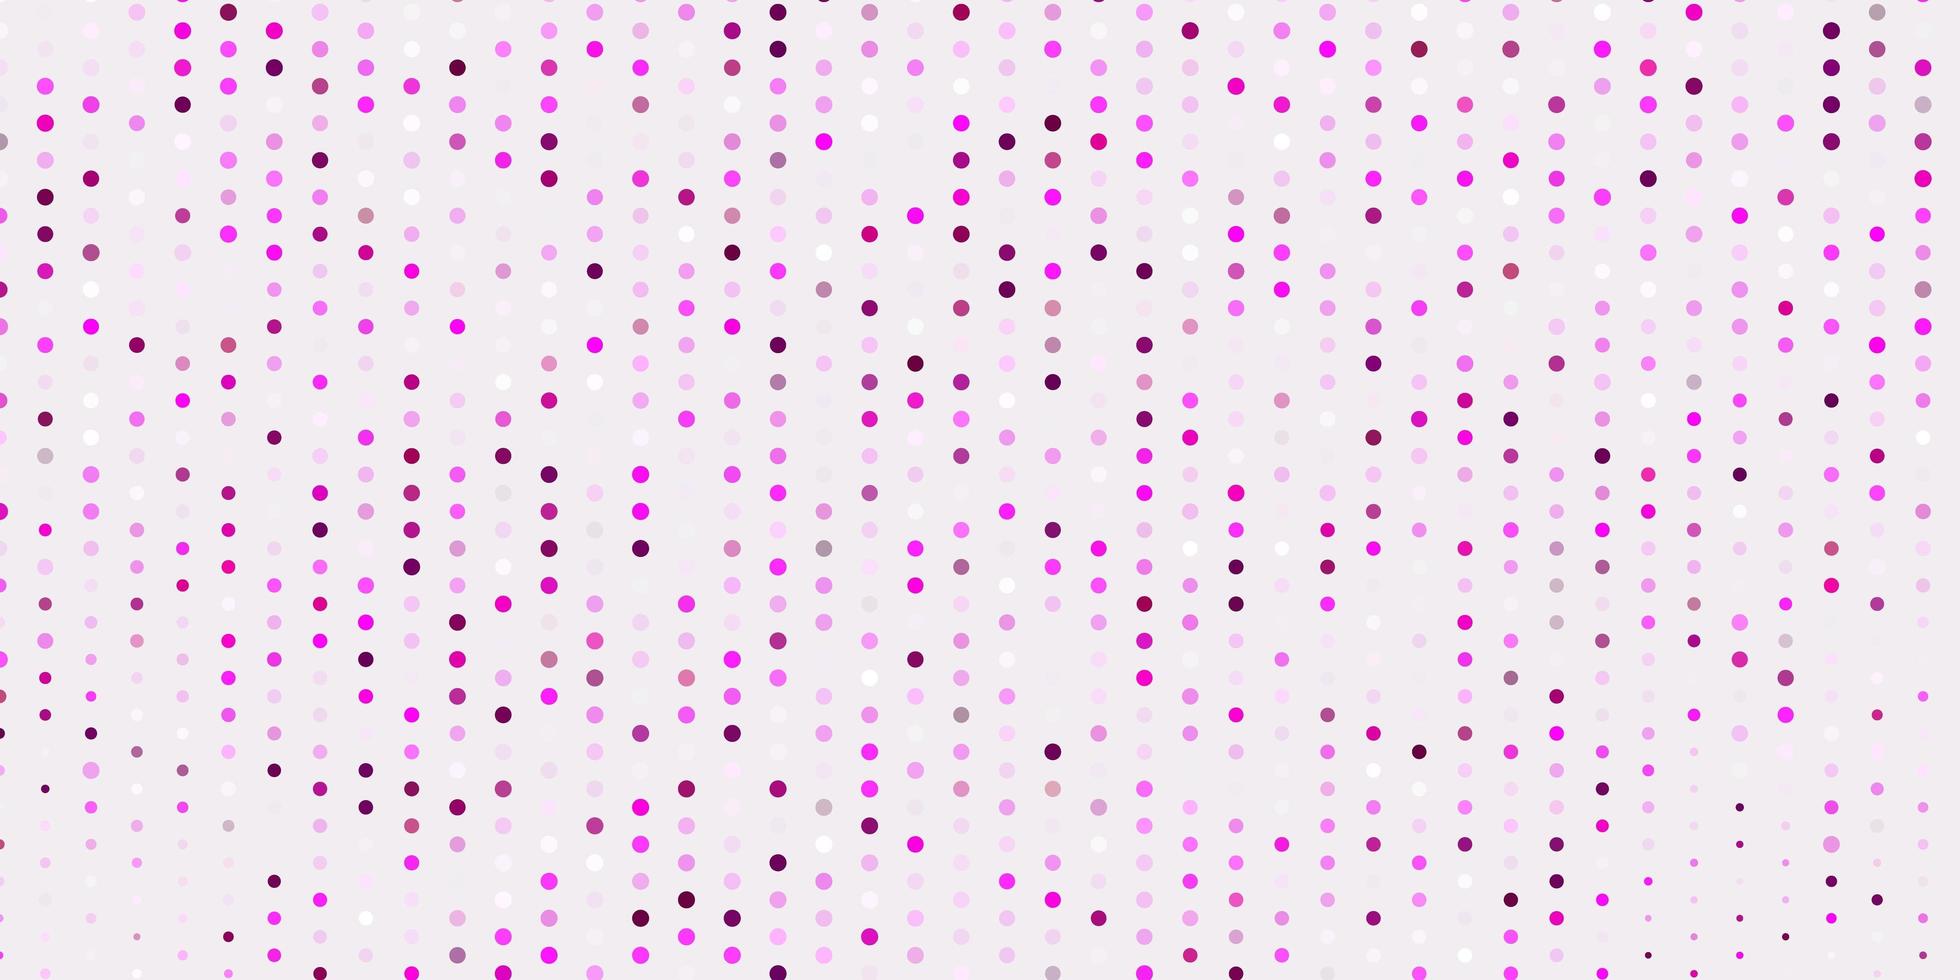 fundo do vetor rosa claro com bolhas.